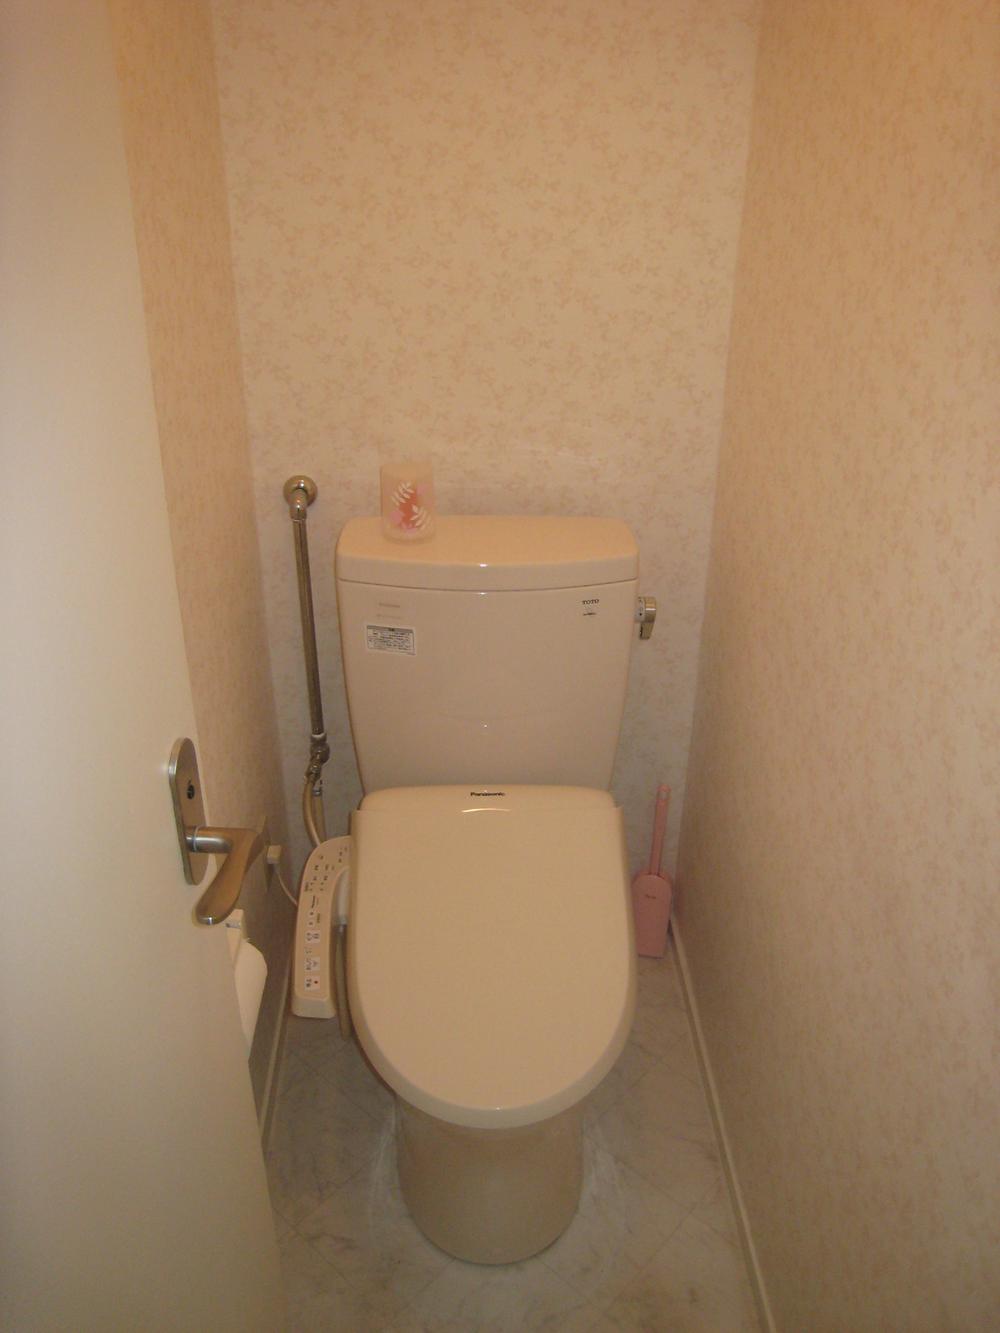 Toilet. Toilet (2013 October exchange settled)